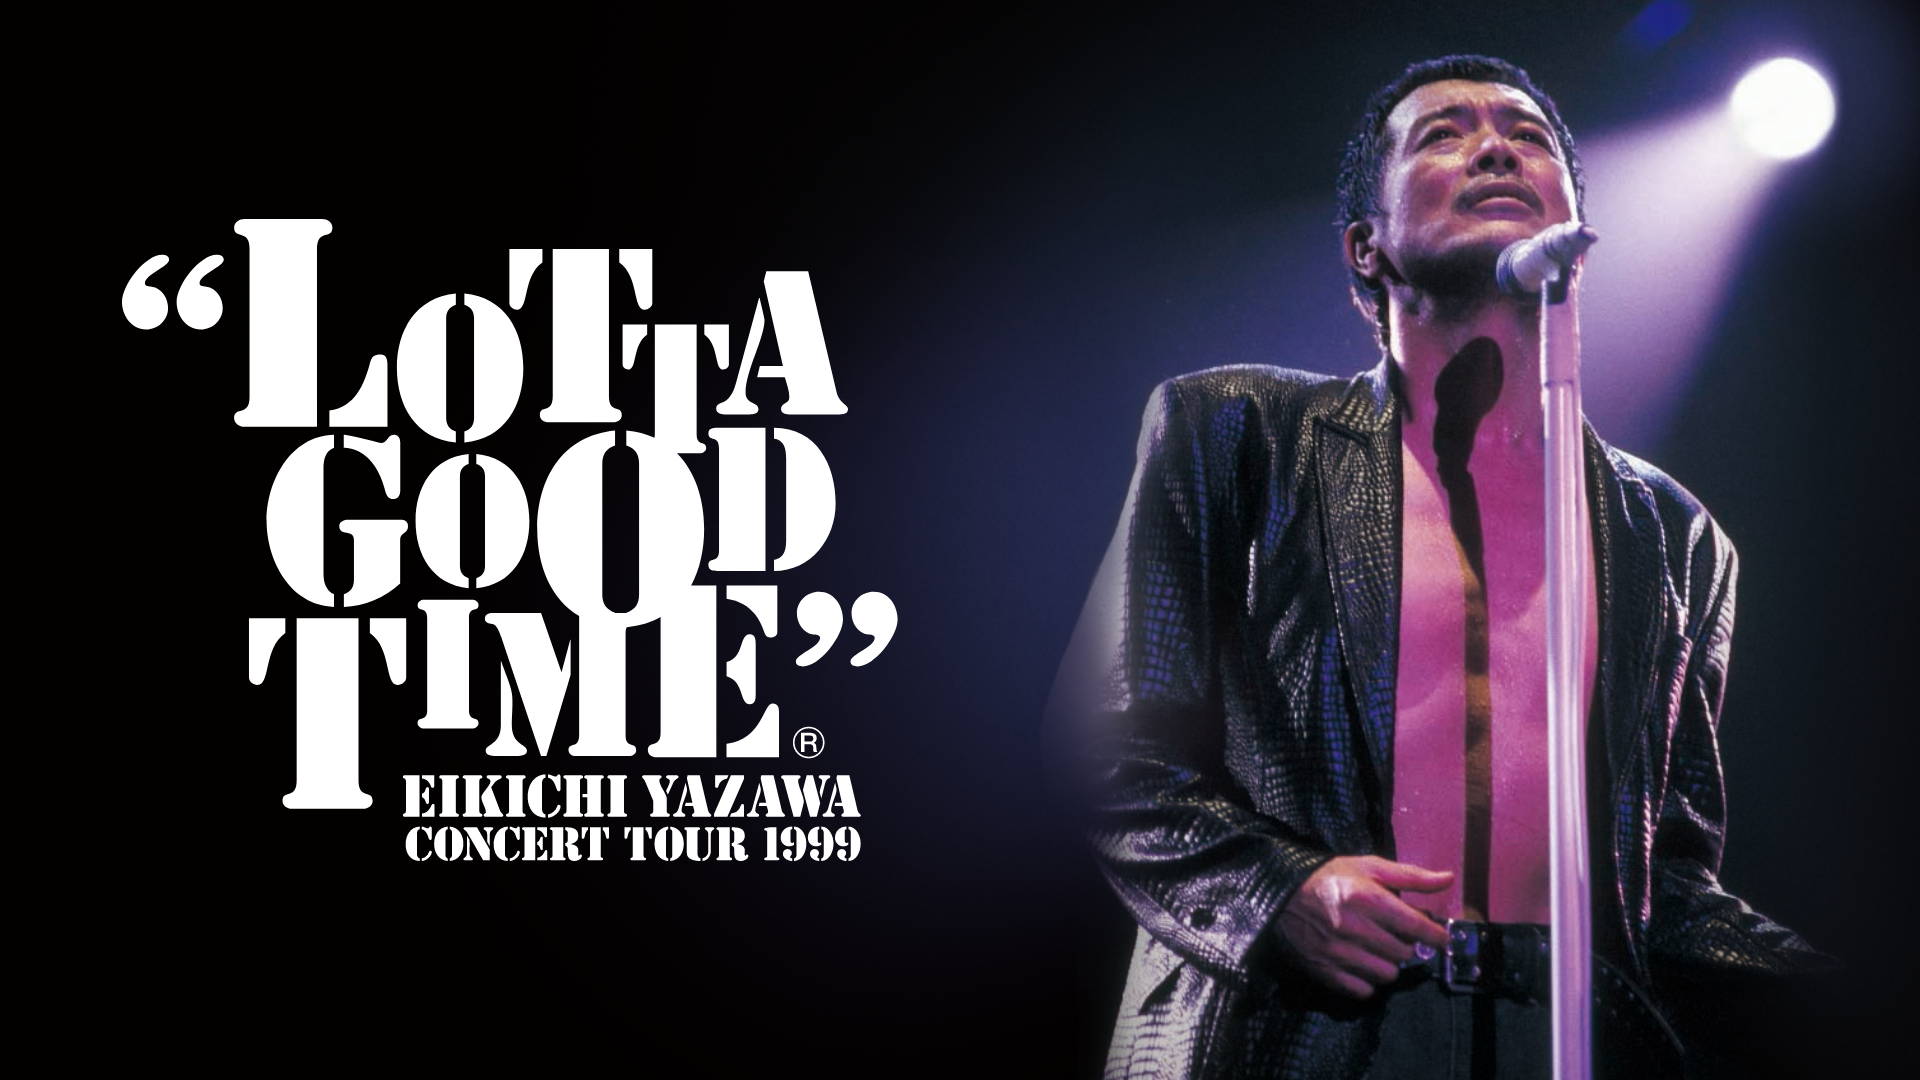 50歳の矢沢永吉が魅せる『LOTTA GOOD TIME EIKICHI YAZAWA CONCERT TOUR 1999』をU-NEXTで配信決定！初のフルバージョンで公開  | U-NEXT コーポレート